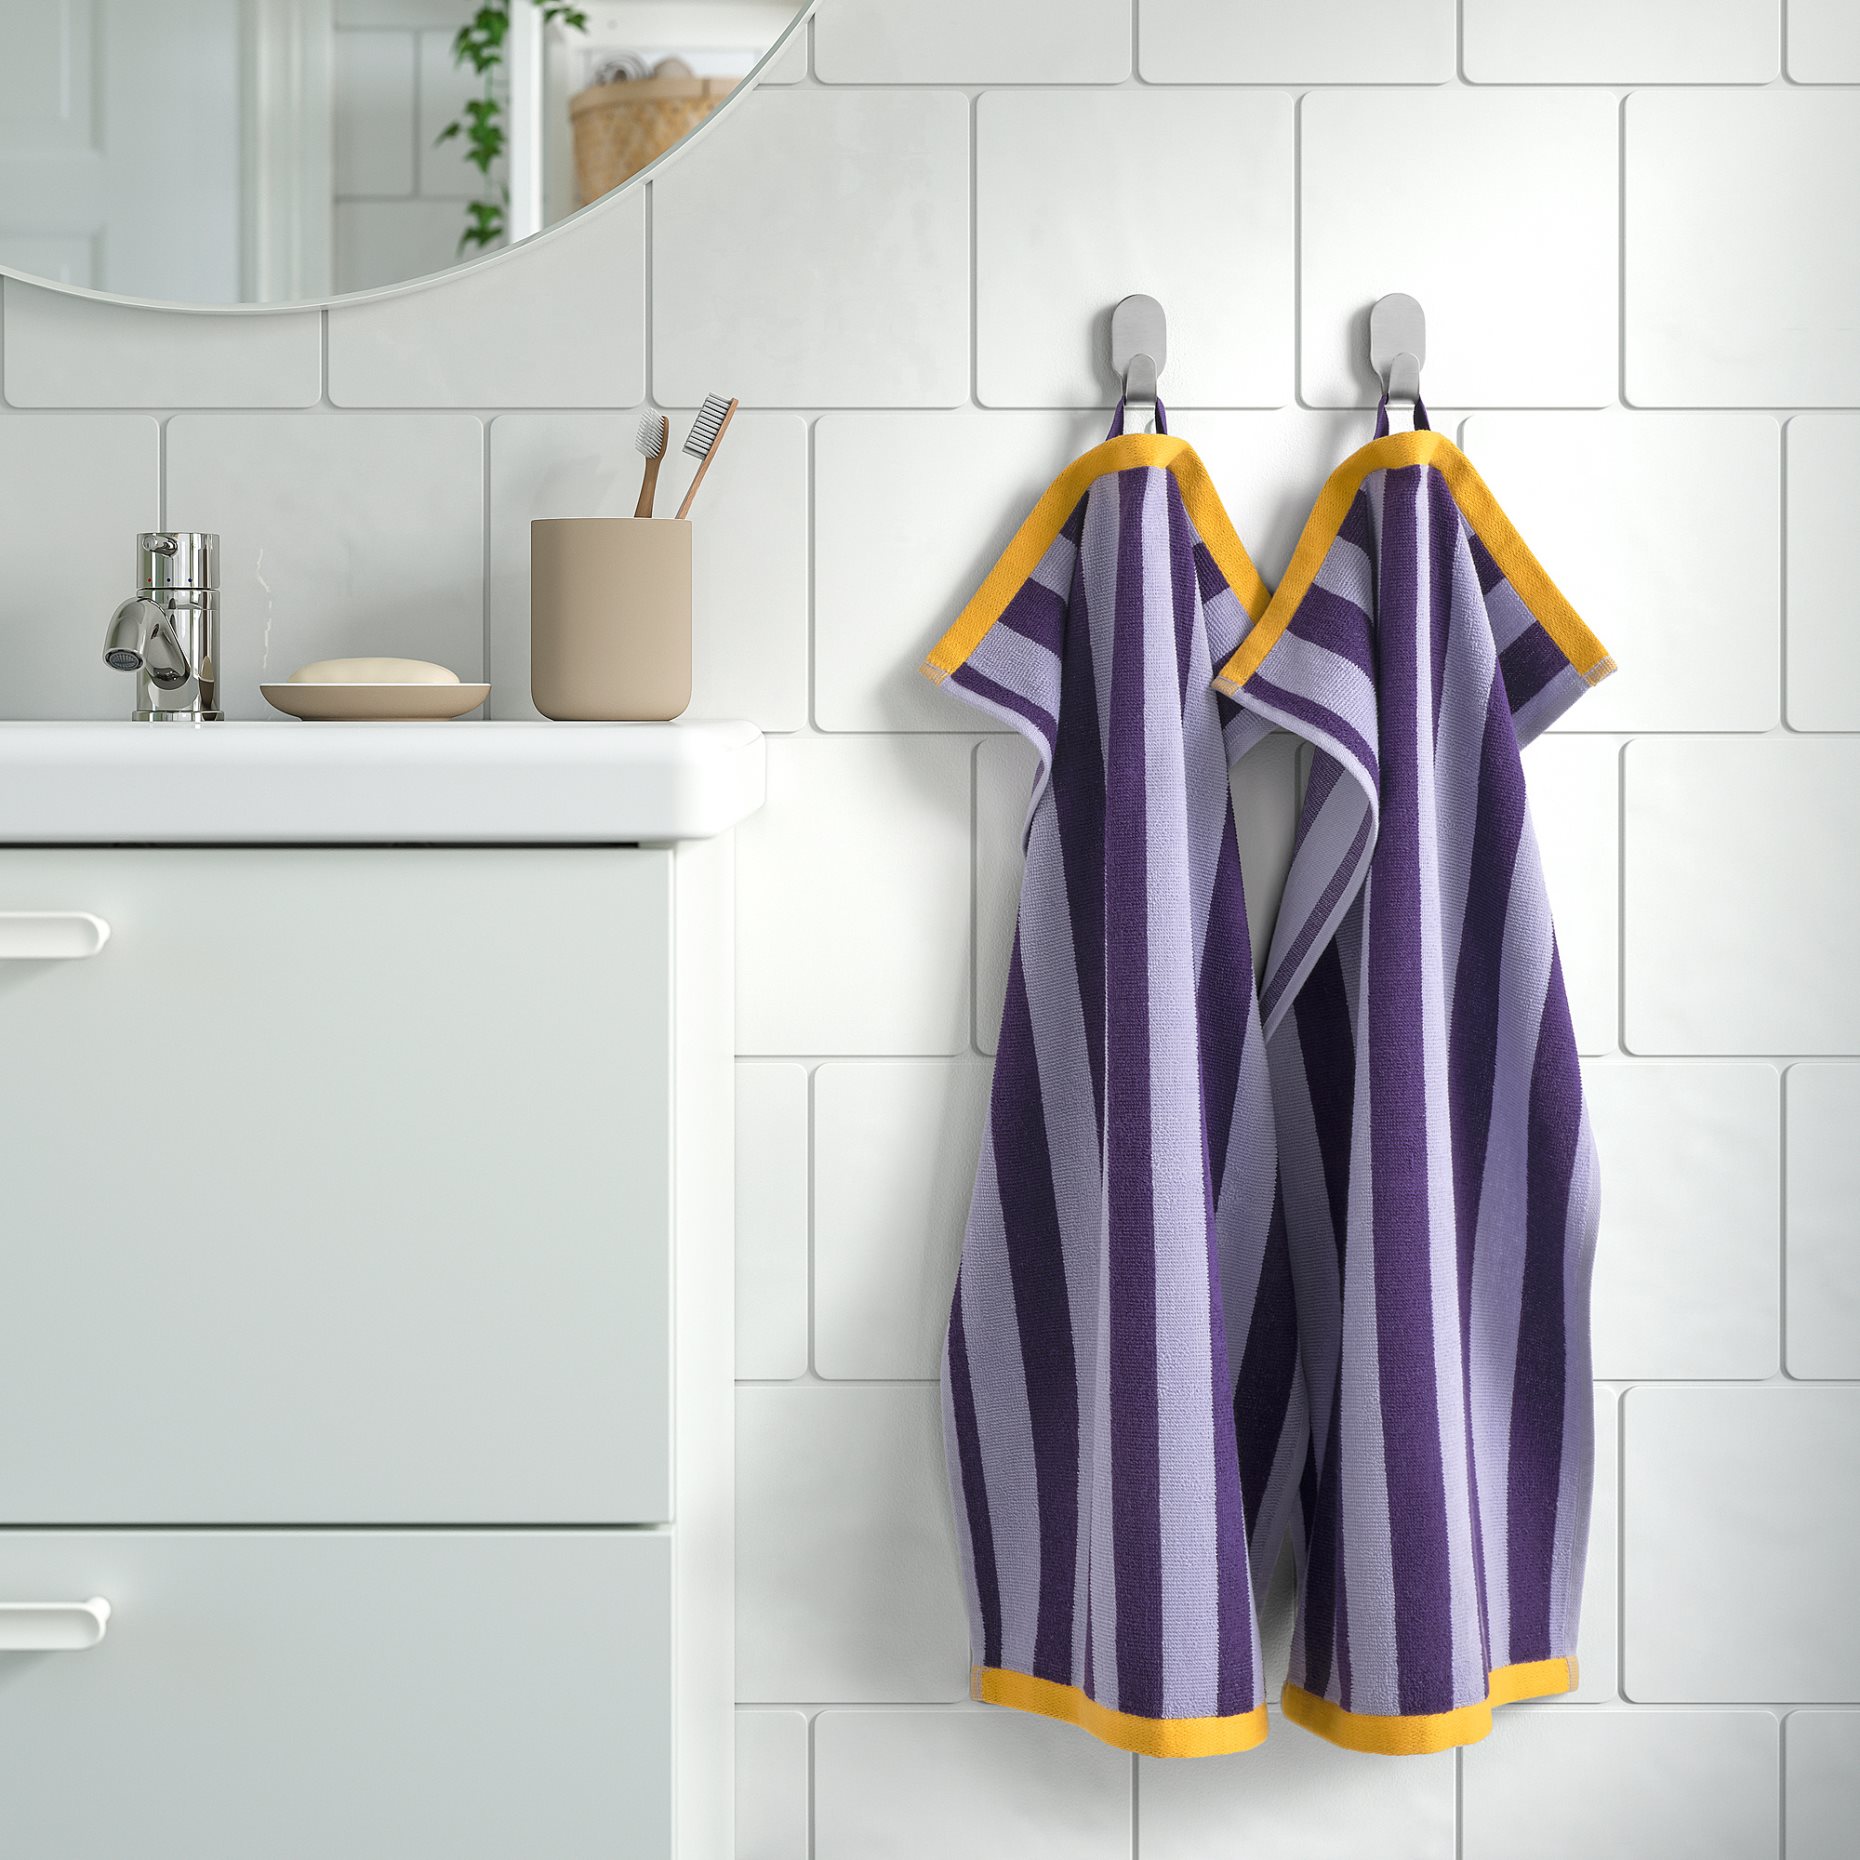 ENSKOTTMAL, hand towel/striped, 40x70 cm, 705.469.31